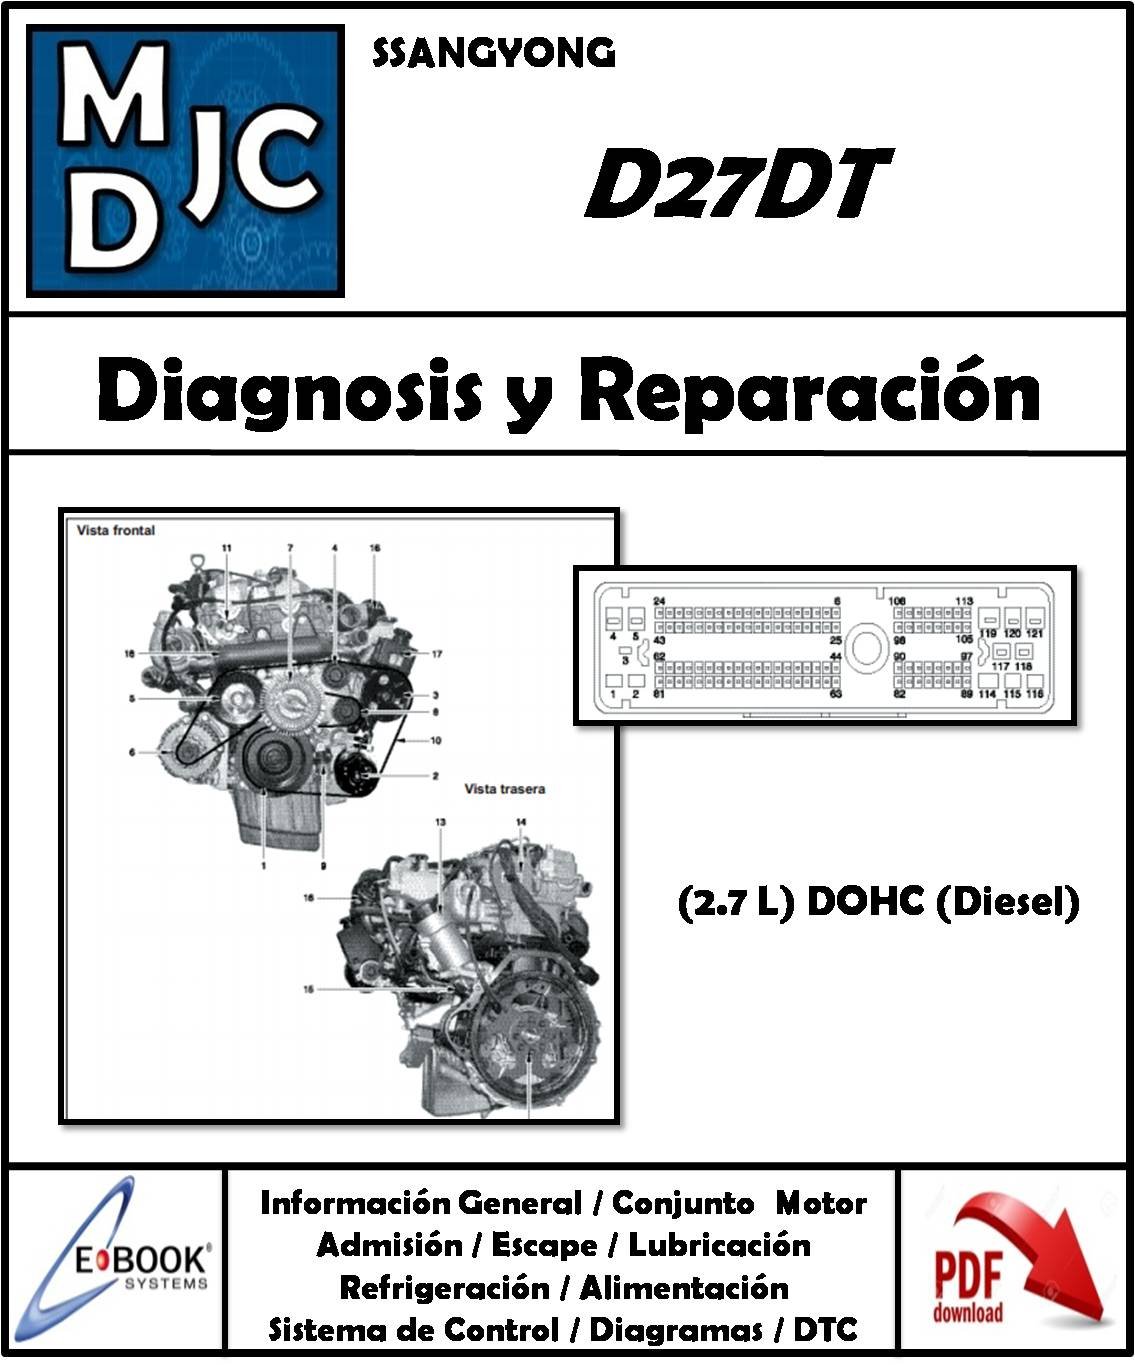 SsangYong D27DT (2.7 L / DOHC / Diesel)